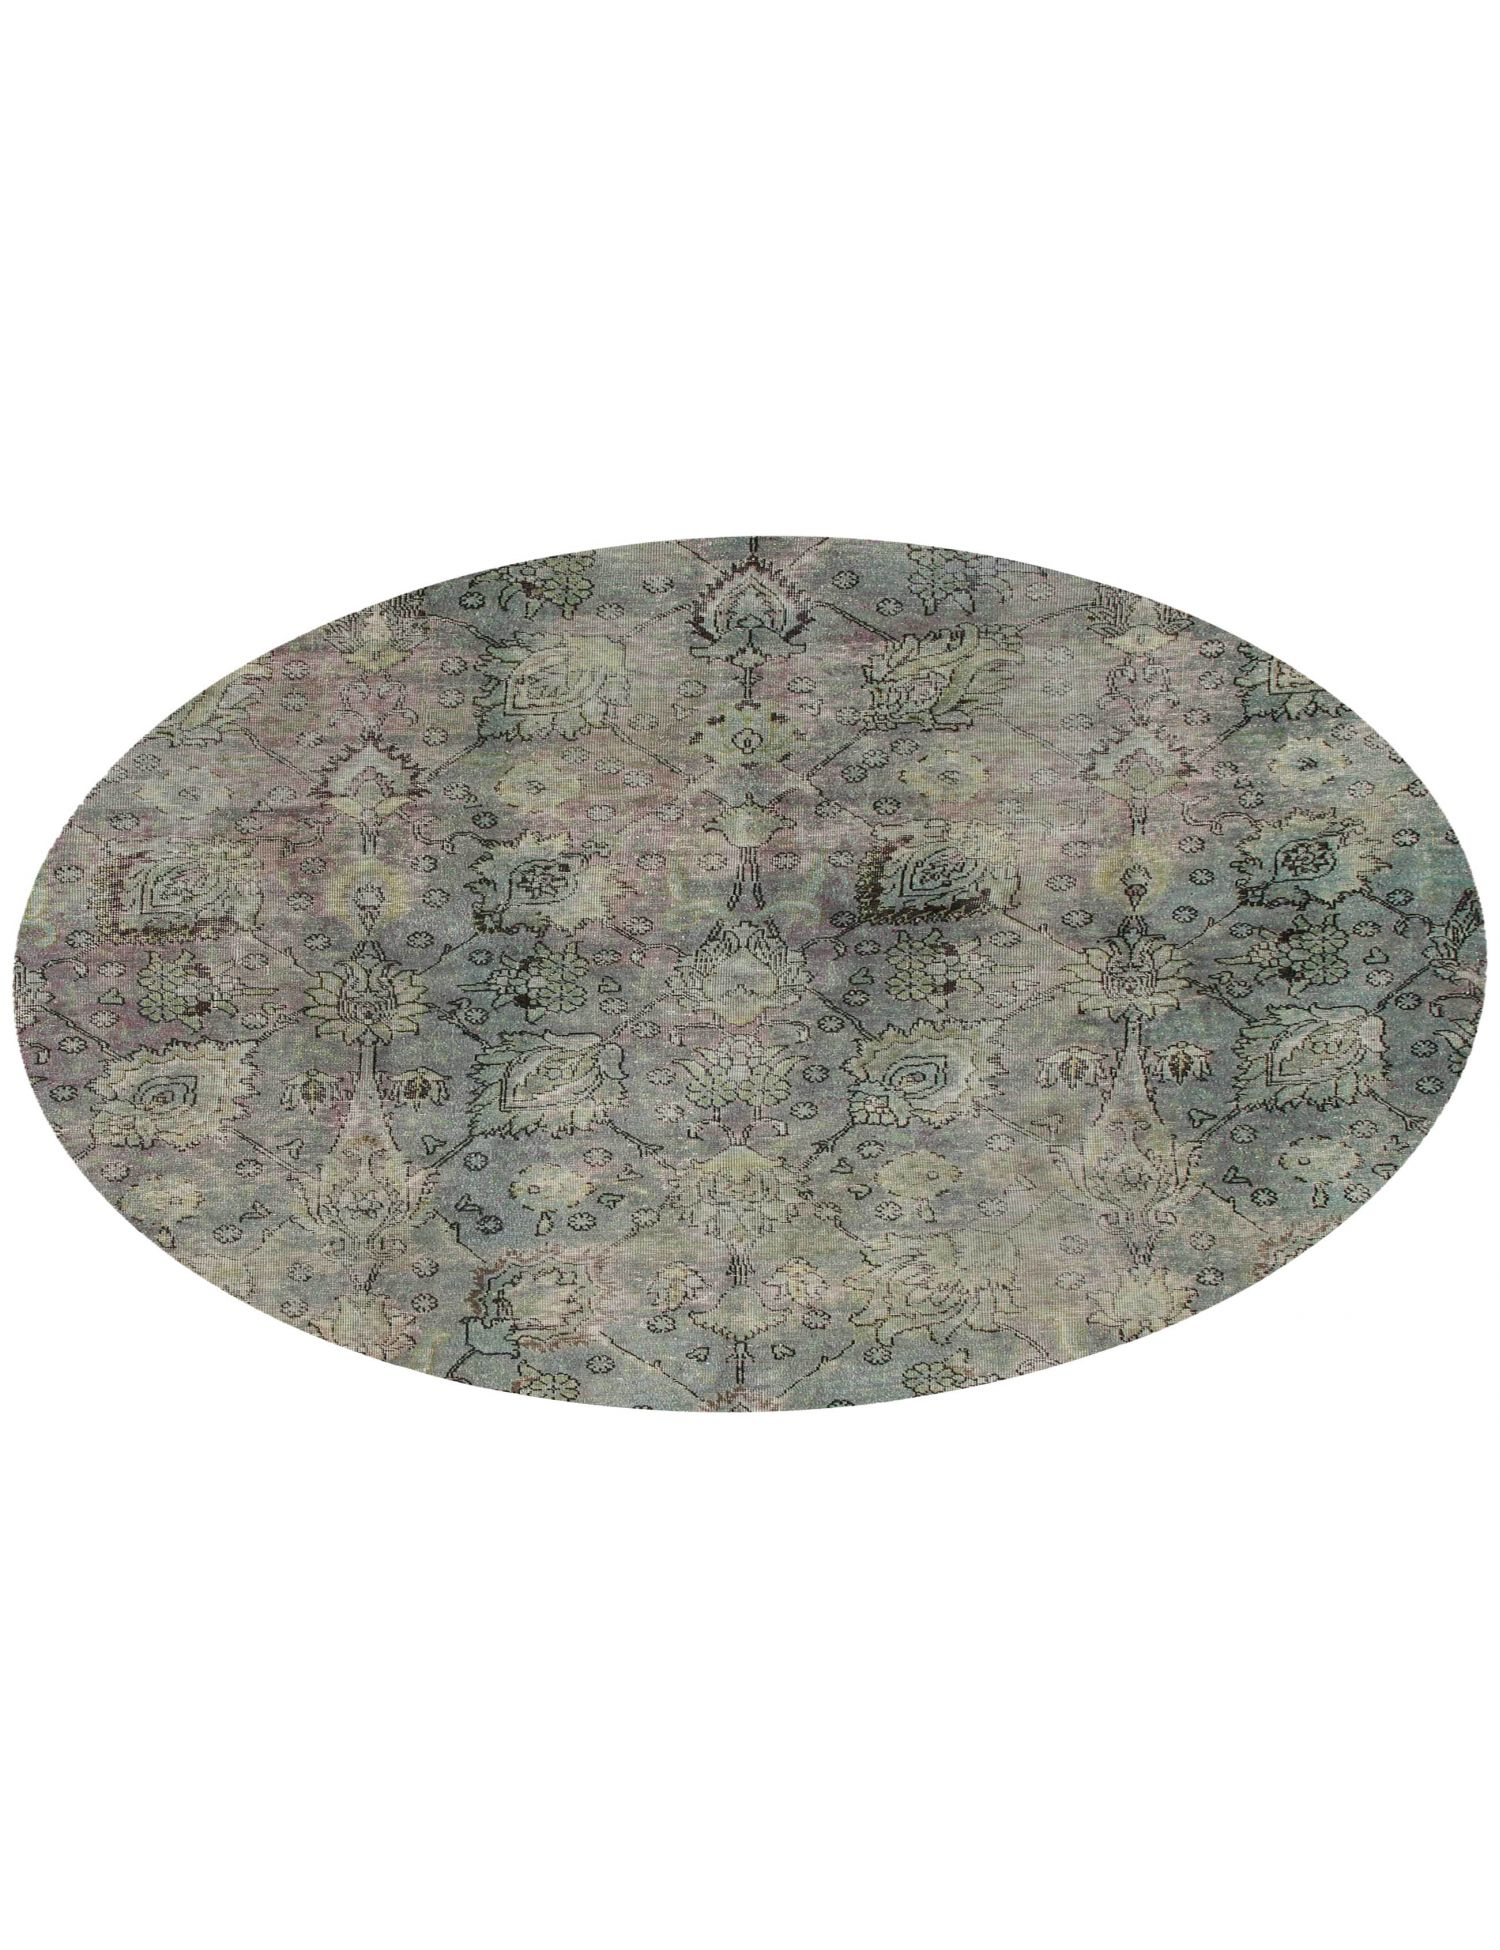 Rund  Vintage Teppich  grün <br/>192 x 192 cm